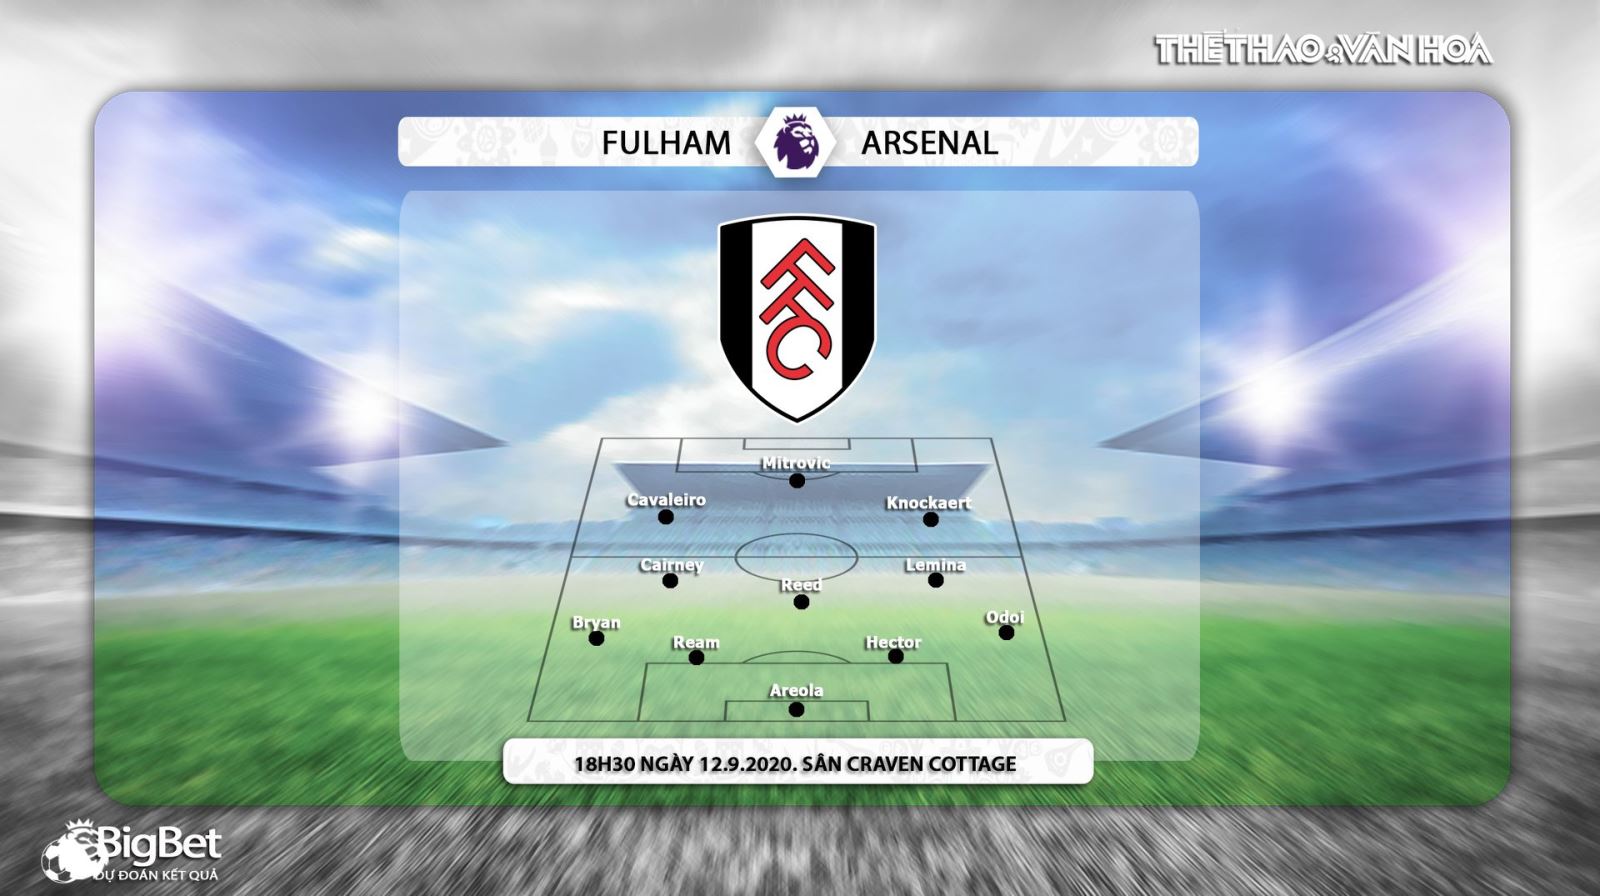 Fullham vs Arsenal, nhận định bóng đá, kèo bóng đá, nhận định bóng đá Fullham vs Arsenal , fulham, arsenal, bóng đá, bóng đá hôm nay, nhận định, kèo thơm 